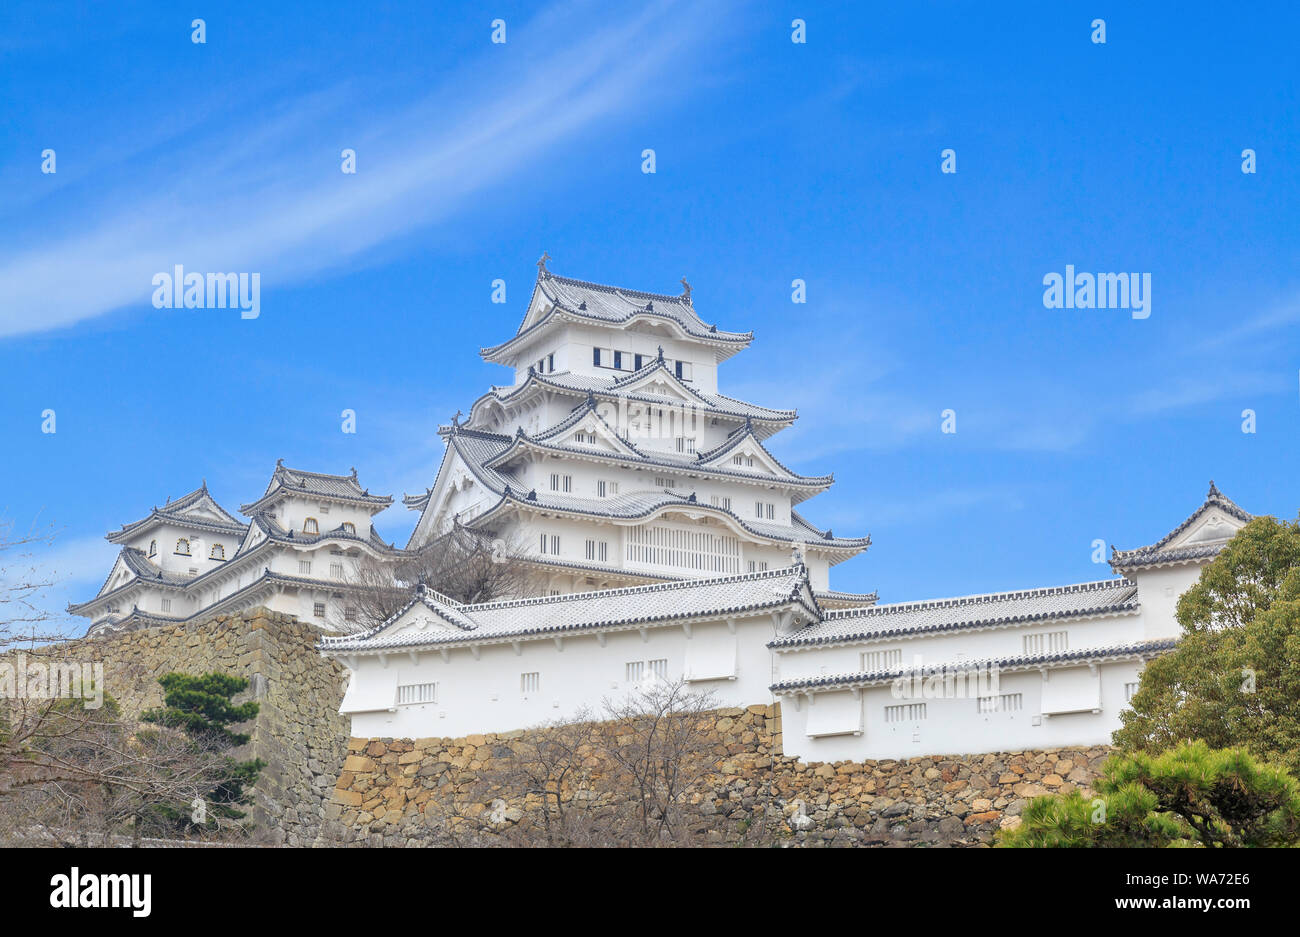 Château de Himeji est célèbre et historique inscrit au Patrimoine Mondial de l'UNESCO. Situé dans la ville de Himeji, préfecture de Hyogo, Japon. Banque D'Images